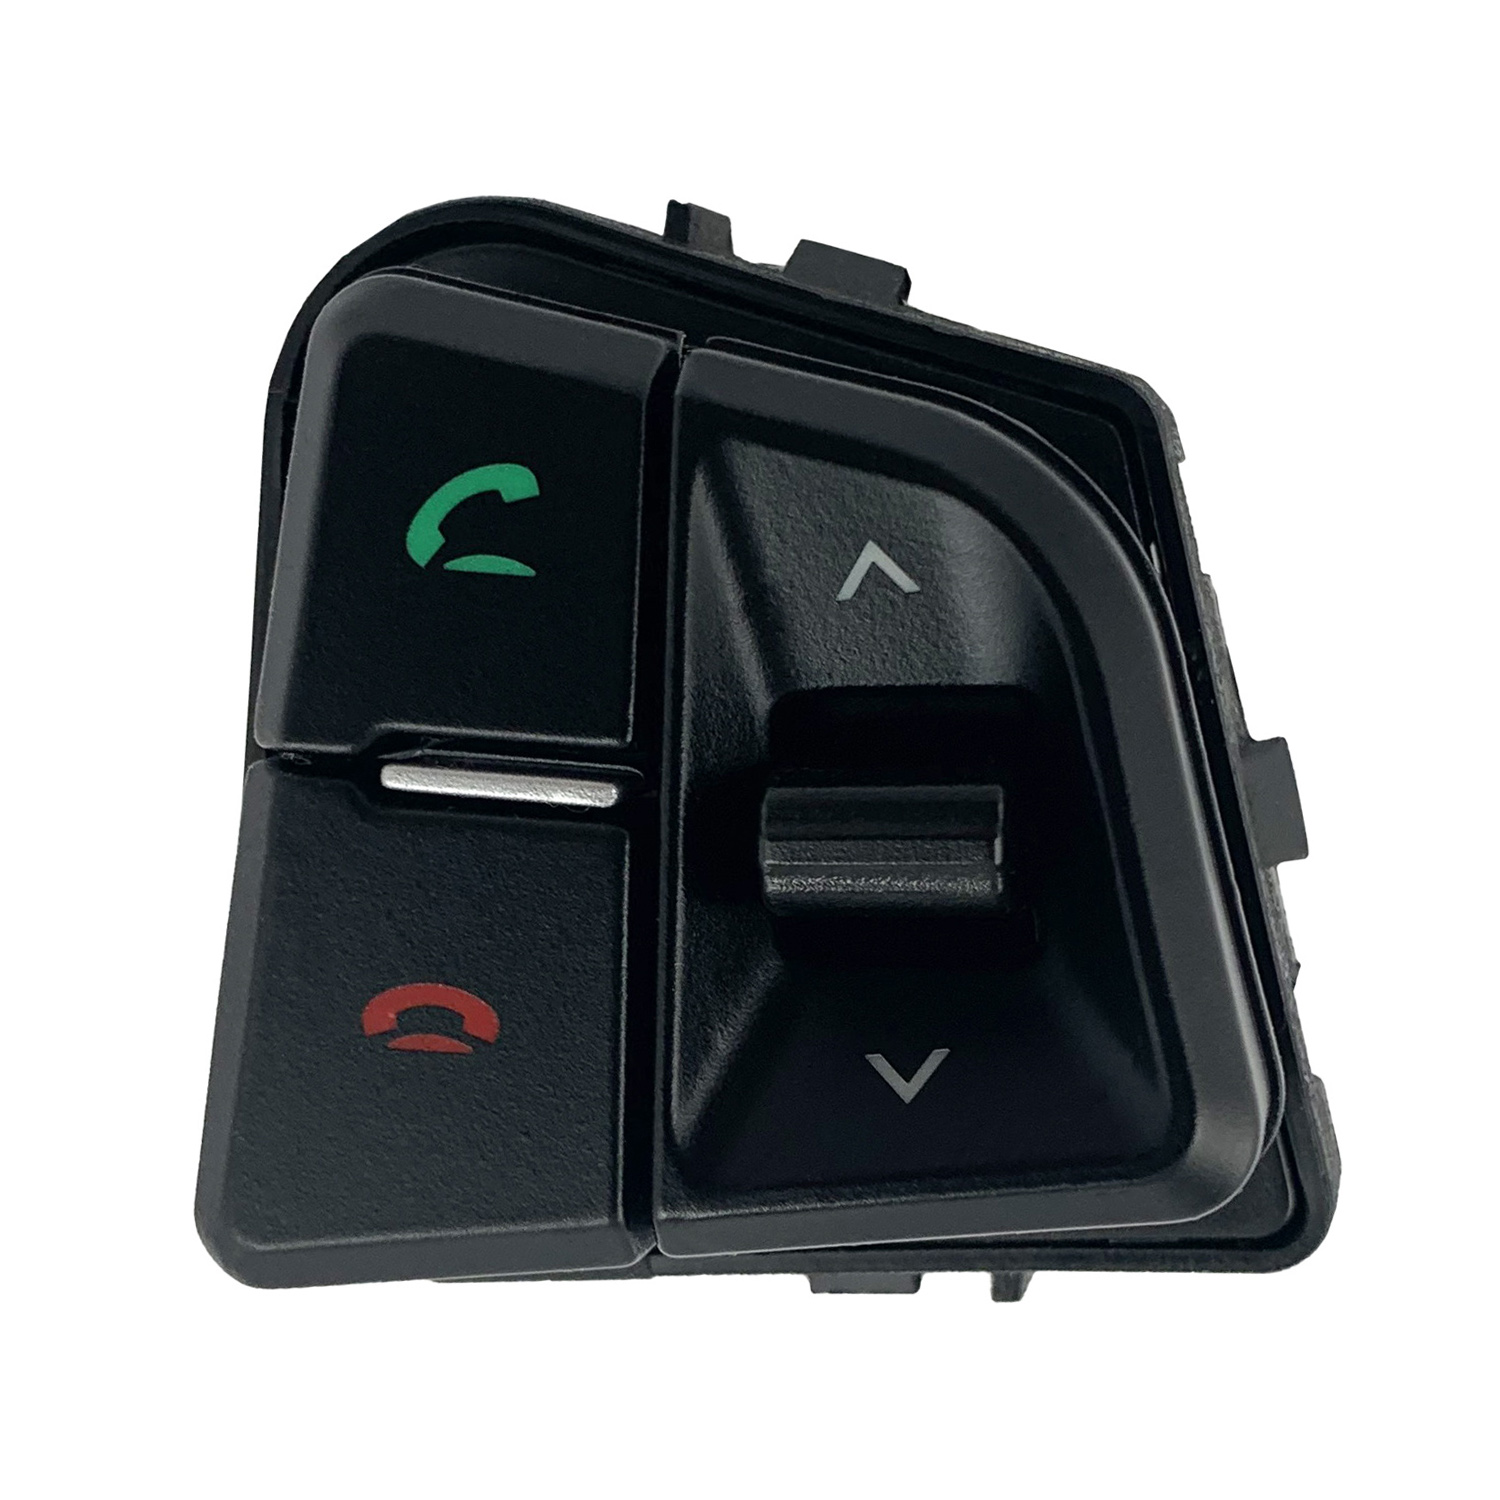  کلید کنترل تلفن خودرو مدل PP-1985 مناسب برای پژو پارس